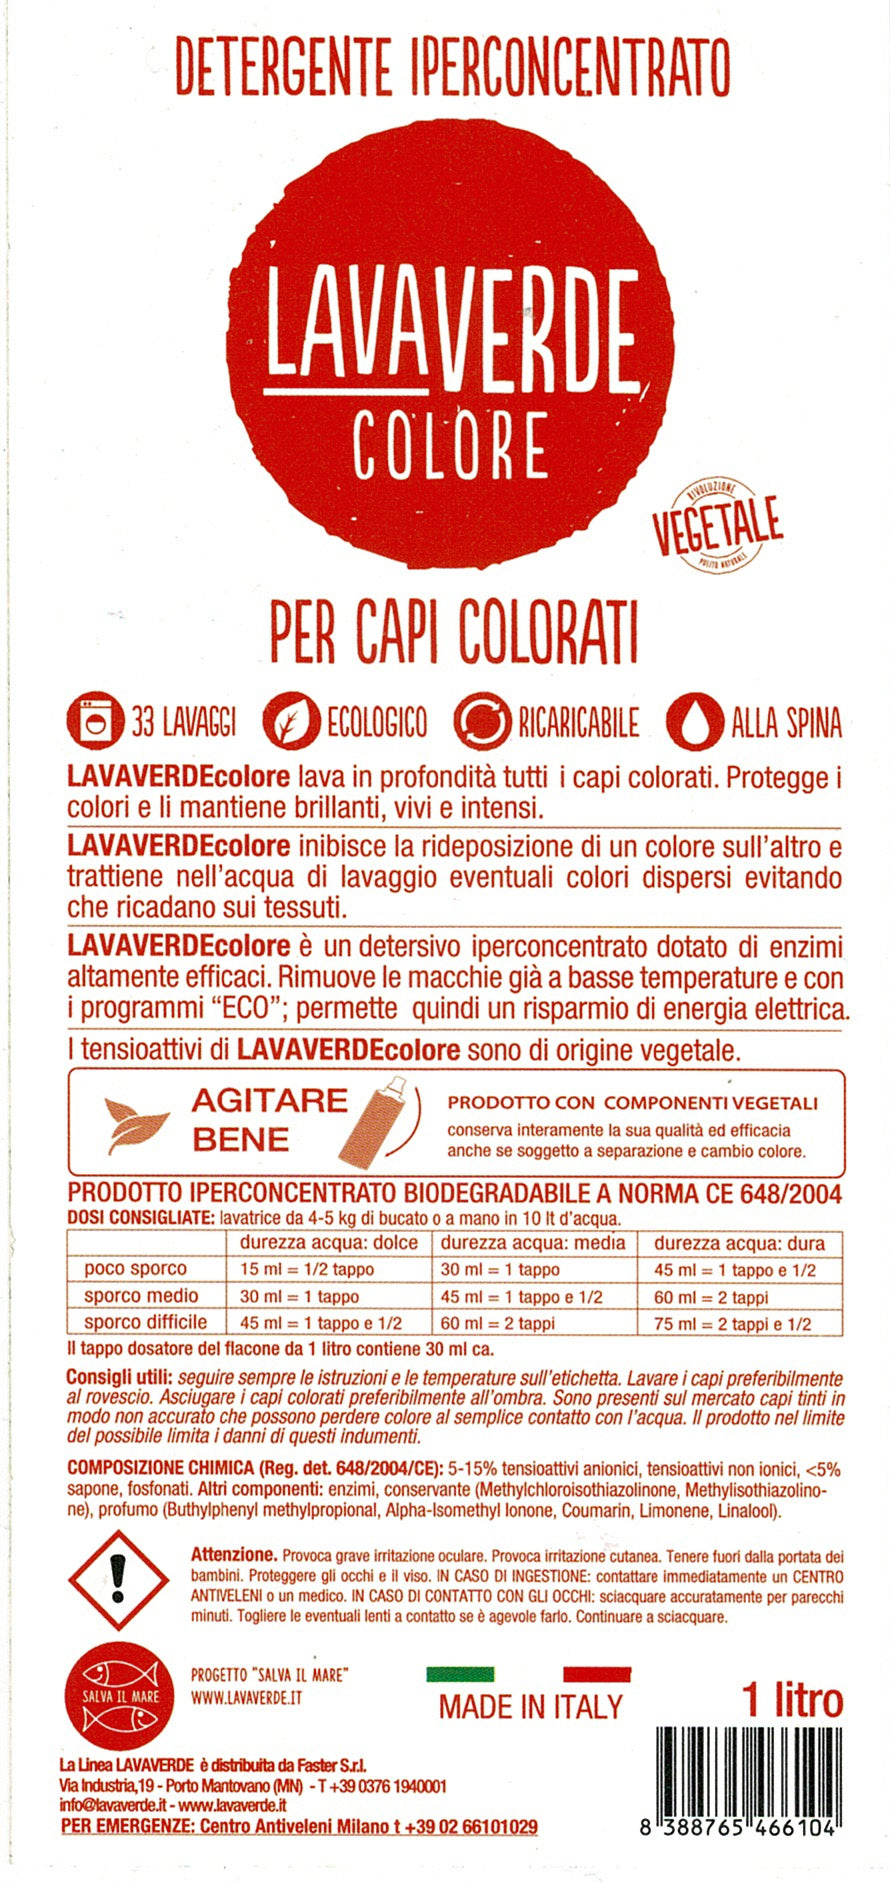 Detergente Iperconcentrato Colore LavaVerde - Vettovaglia.com